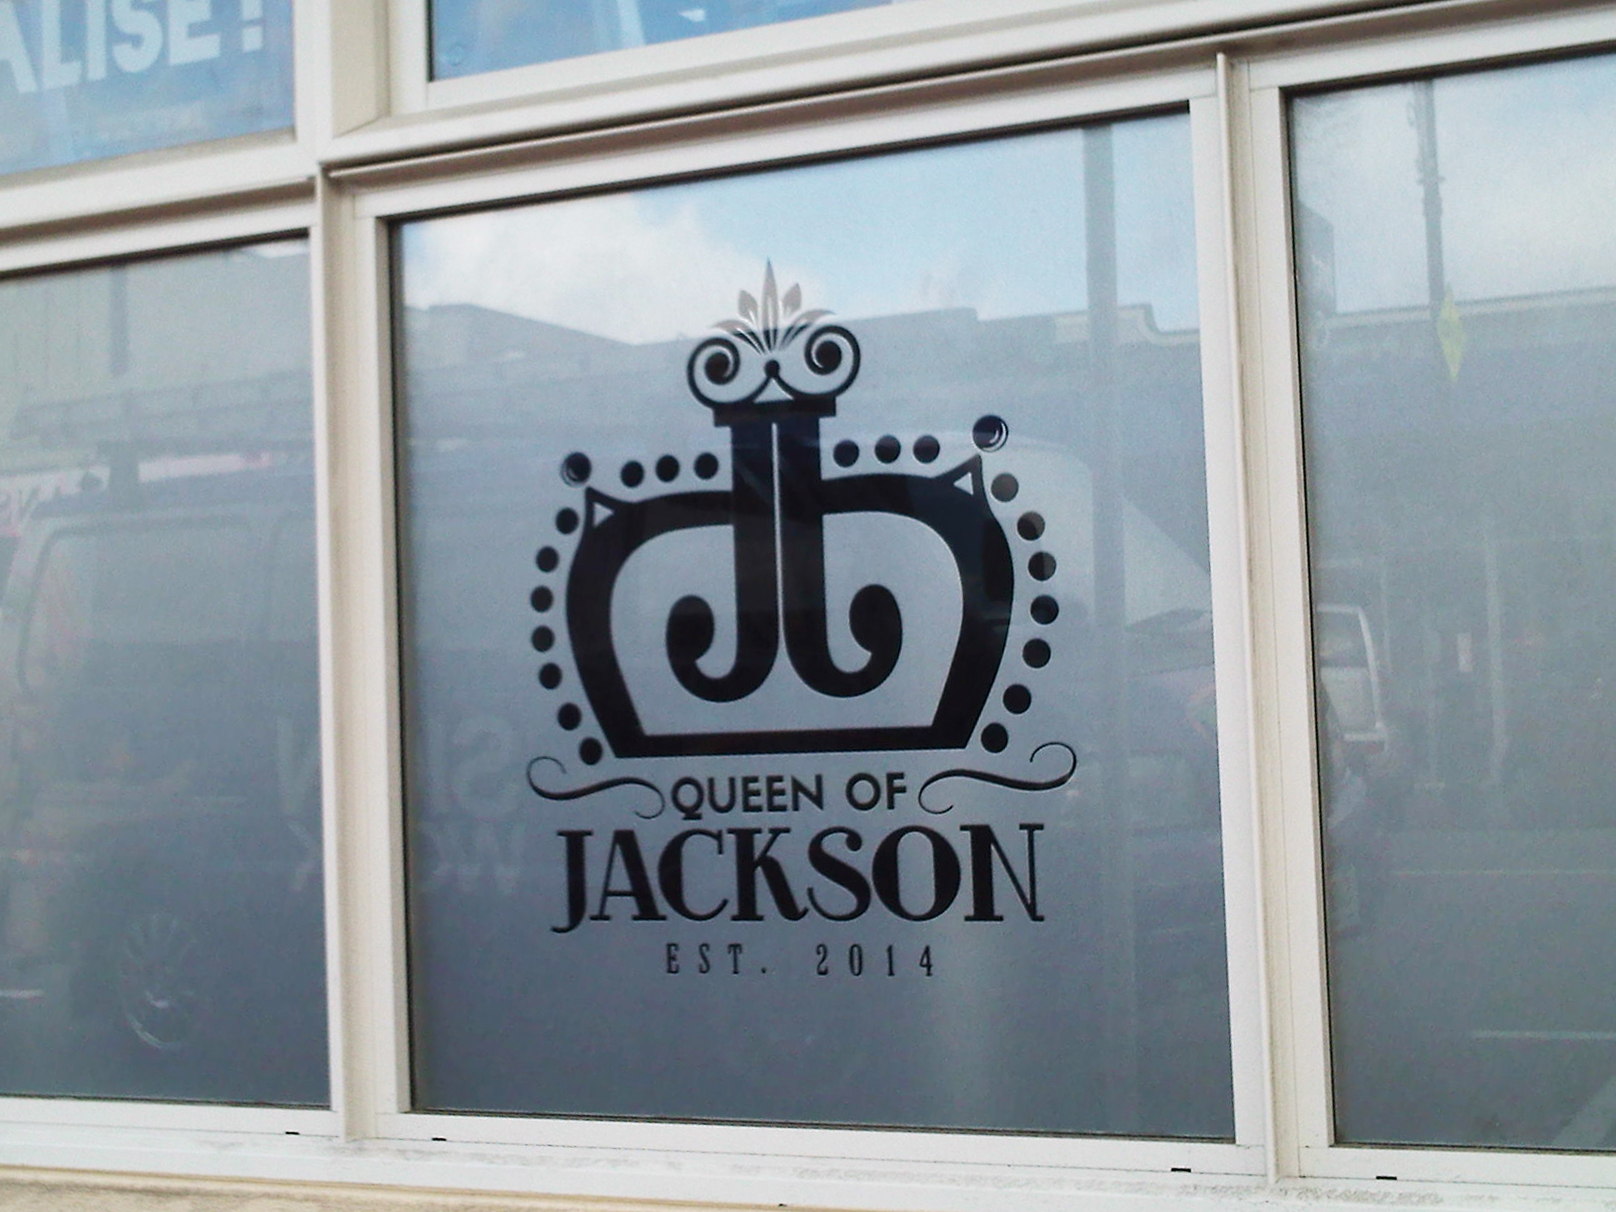 Queen of Jackson image.